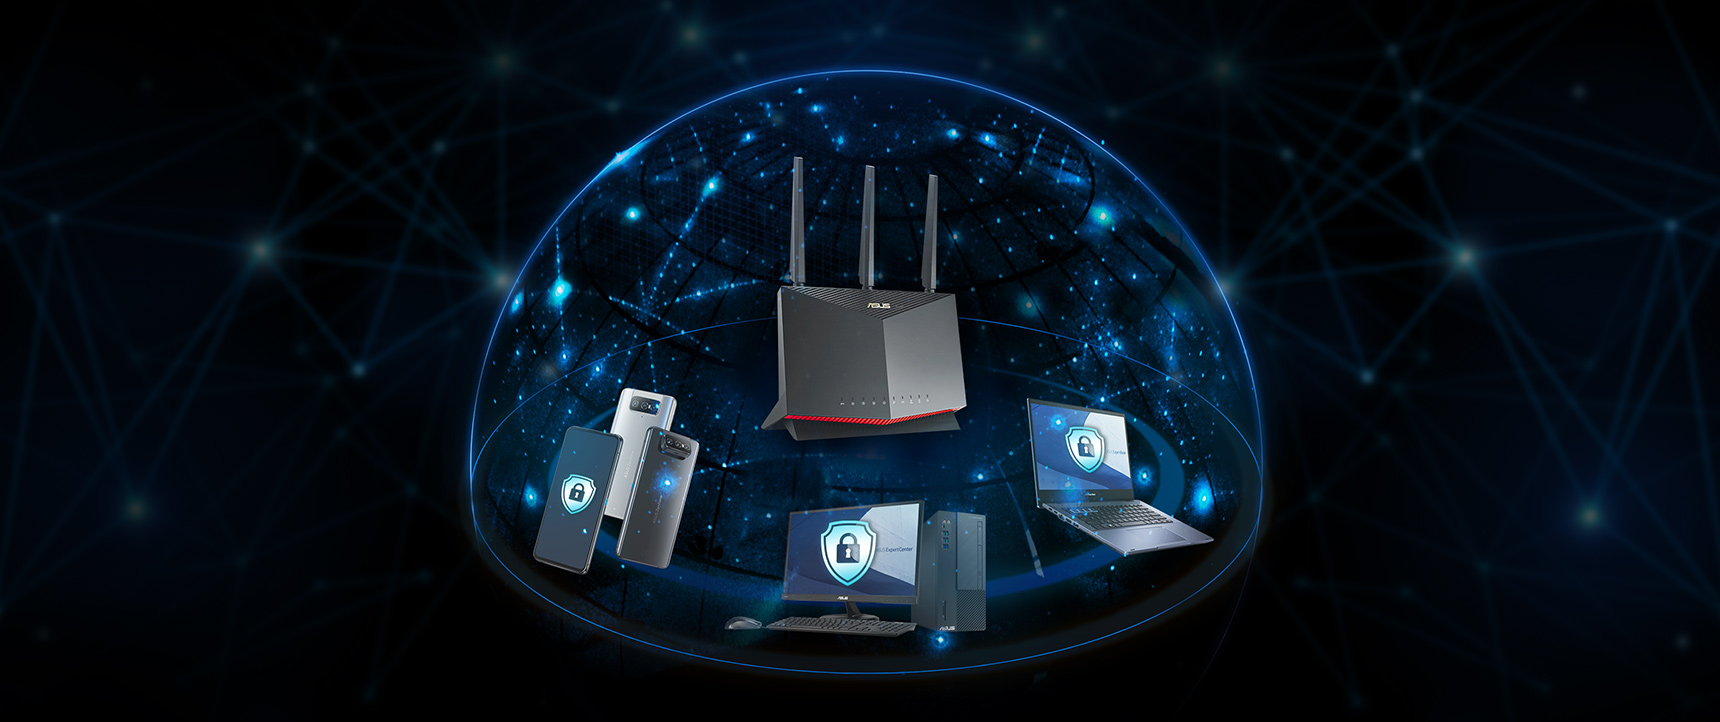 De meeste ASUS-routers zijn voorzien van AiProtection-technologie, aangedreven door Trend Micro™, die ervoor zorgt dat elk apparaat op uw bedrijfsnetwerk wordt beschermd